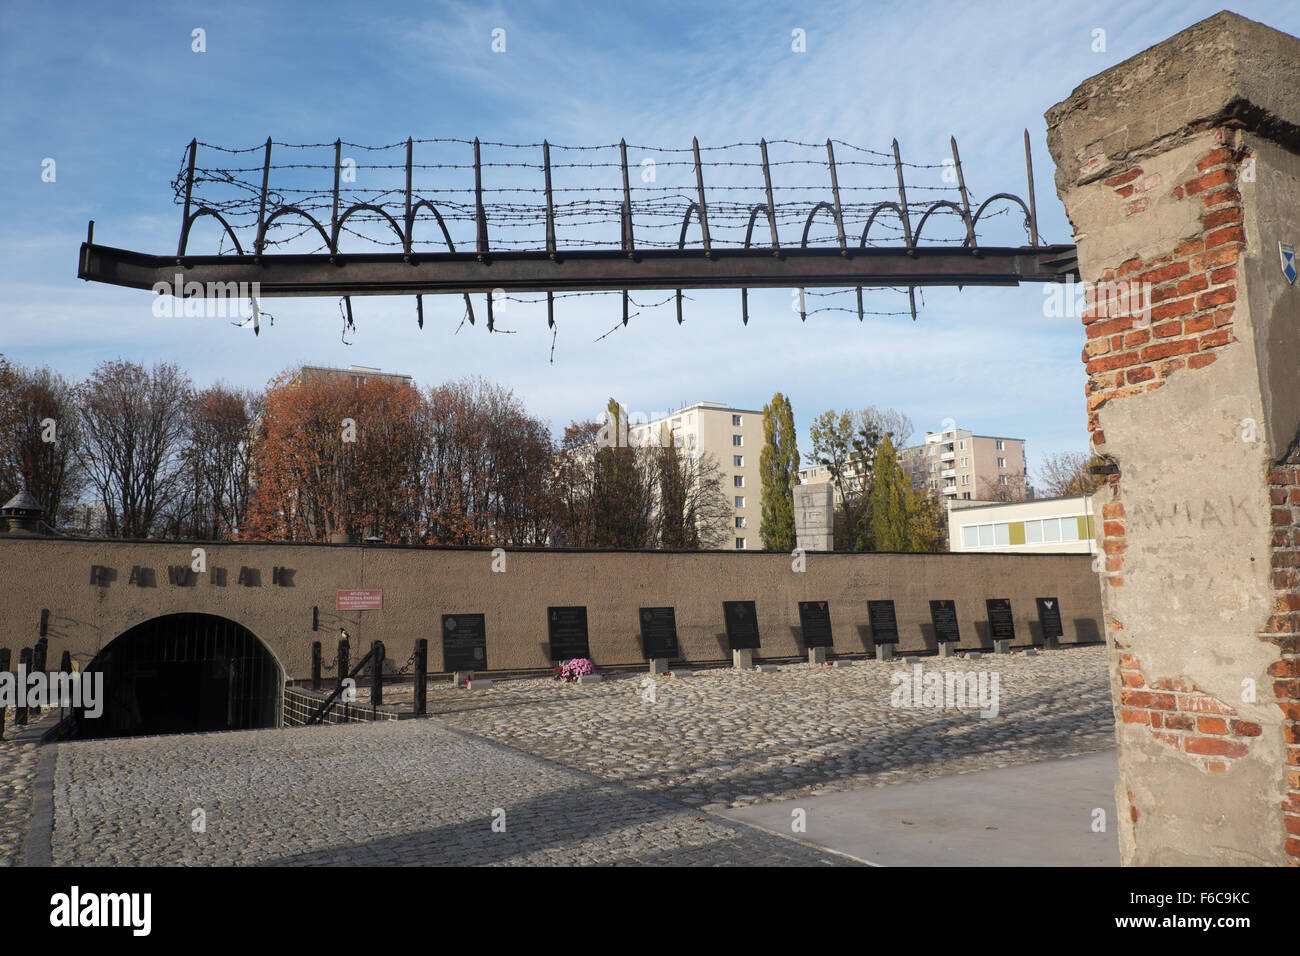 Pologne Varsovie - l'entrée à la prison Pawiak utilisé par les Allemands pendant la Seconde Guerre mondiale pour les interrogatoires, la torture et l'exécution Banque D'Images